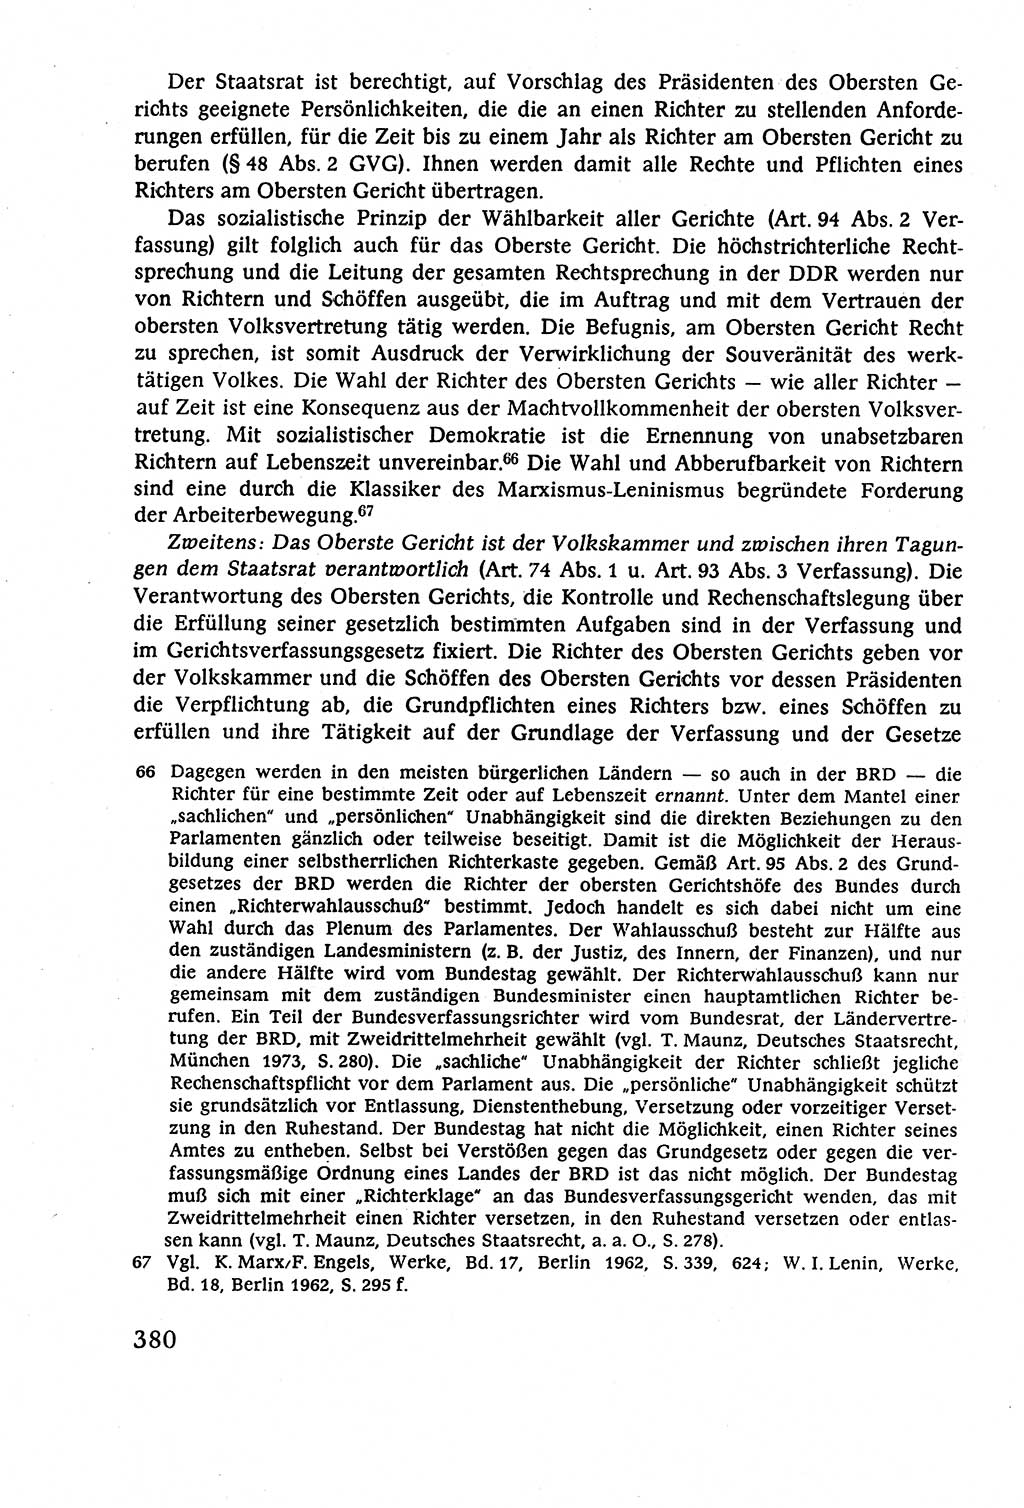 Staatsrecht der DDR (Deutsche Demokratische Republik), Lehrbuch 1977, Seite 380 (St.-R. DDR Lb. 1977, S. 380)